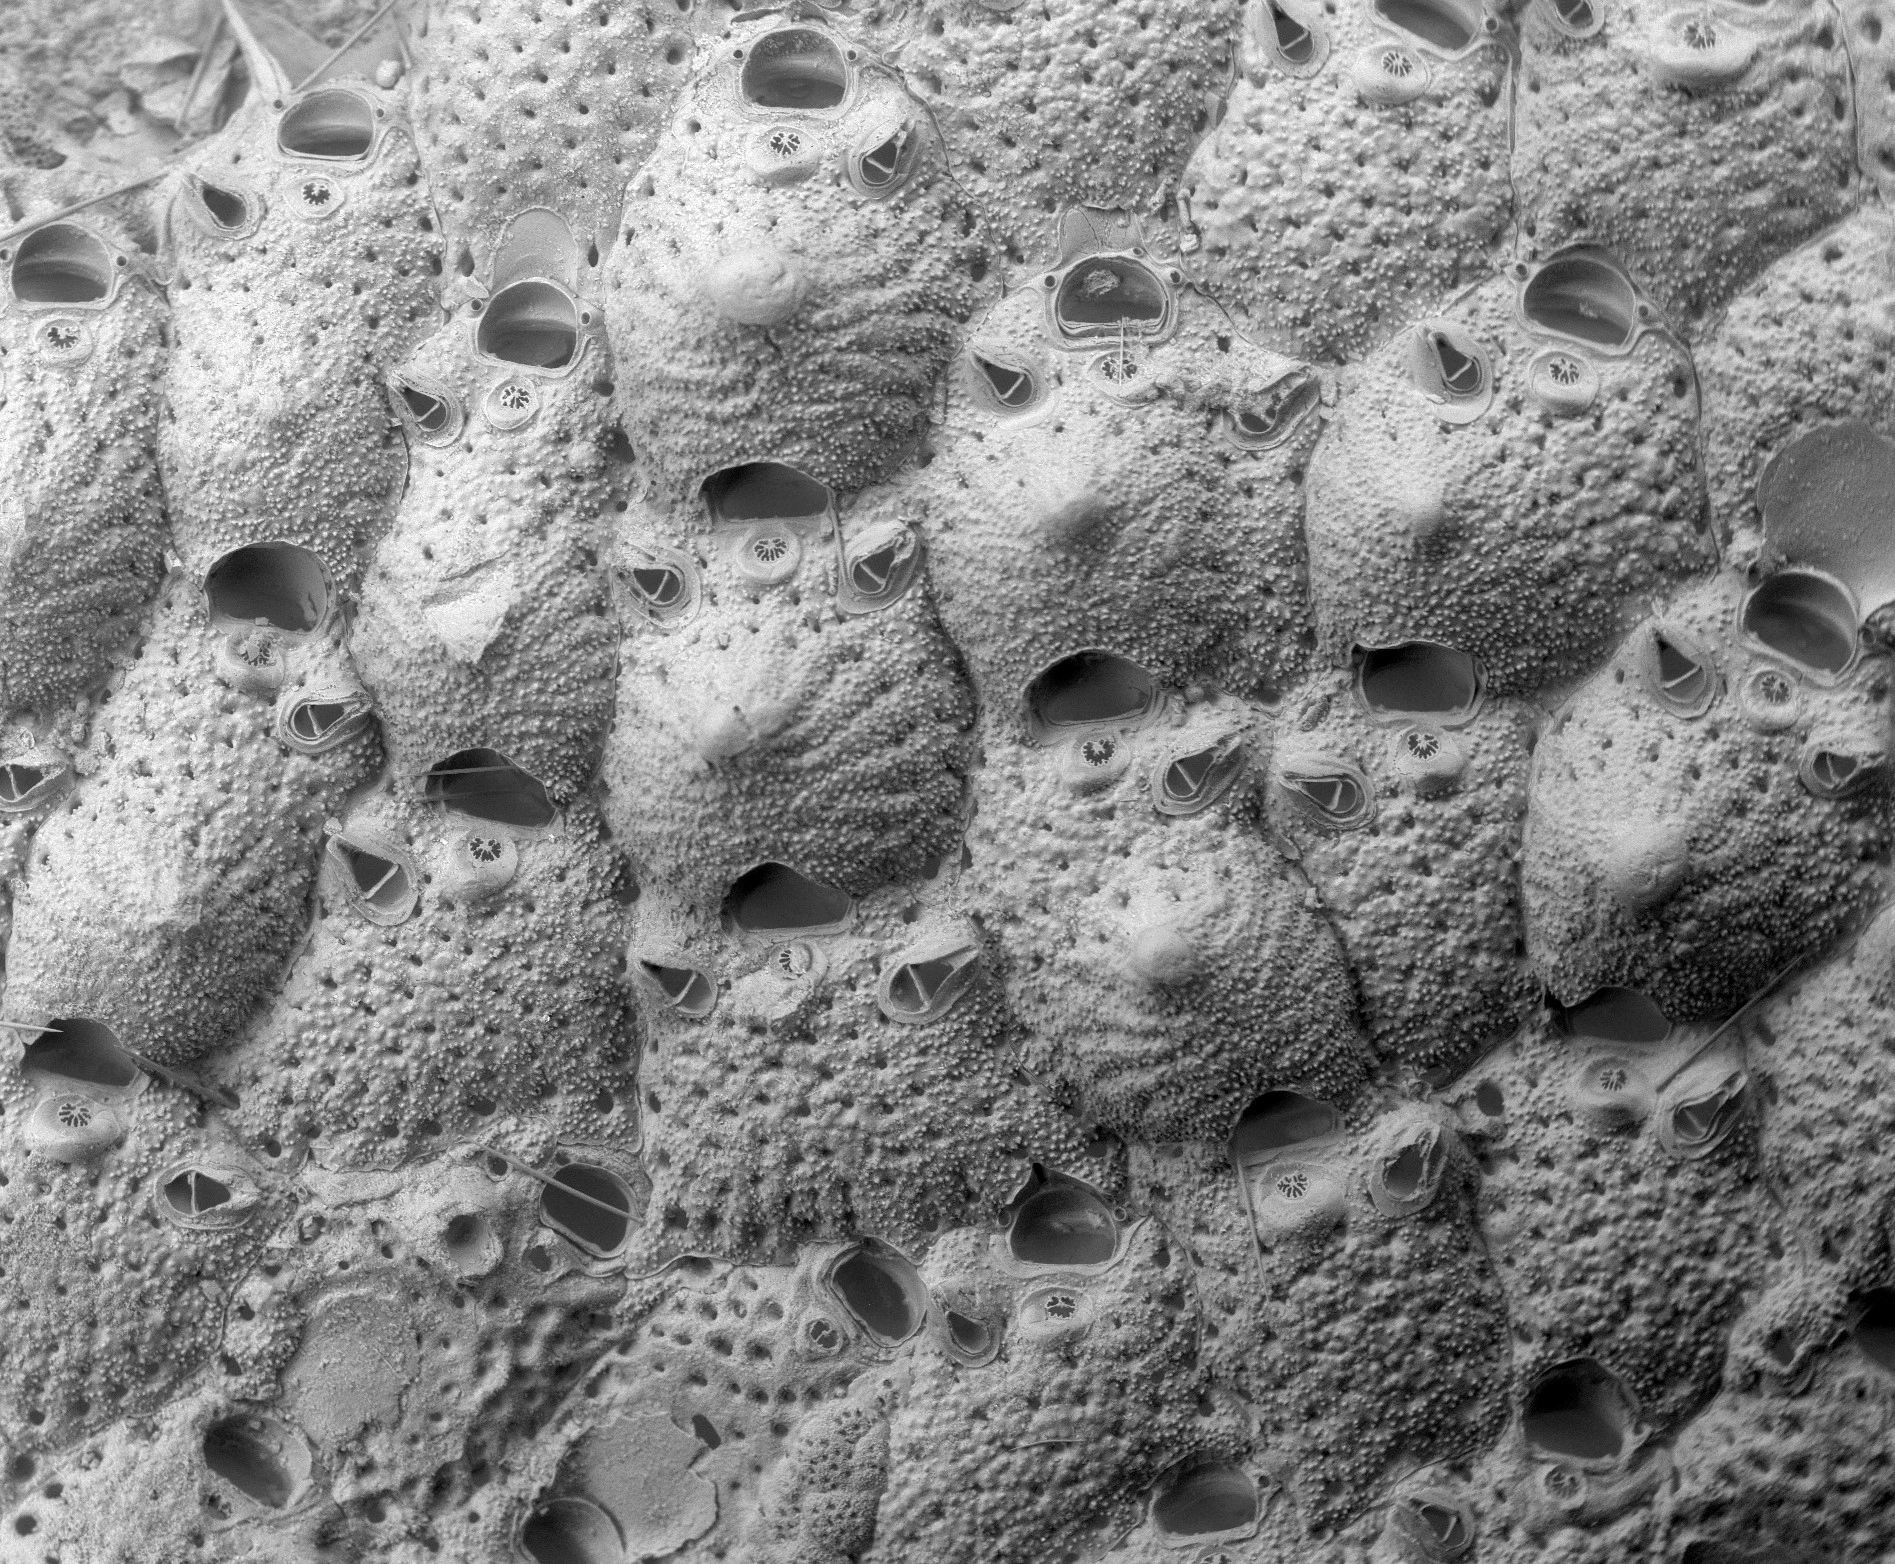 Mosdyr: Microporella.